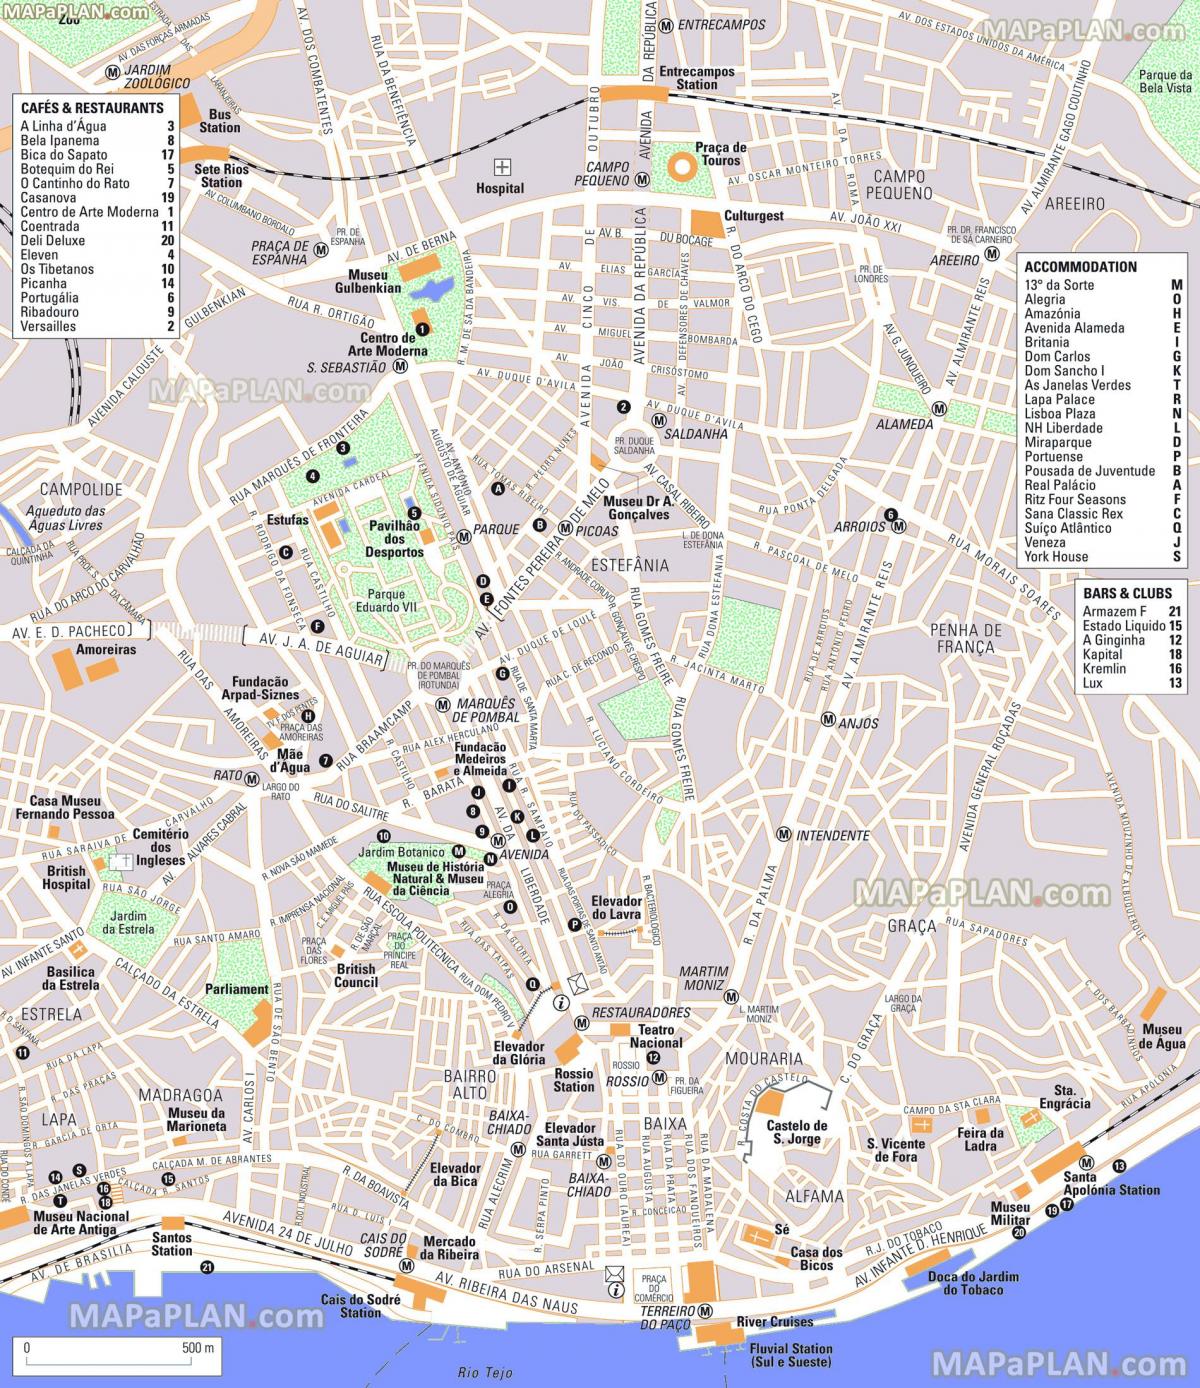 Mappa turistica di Lisbona